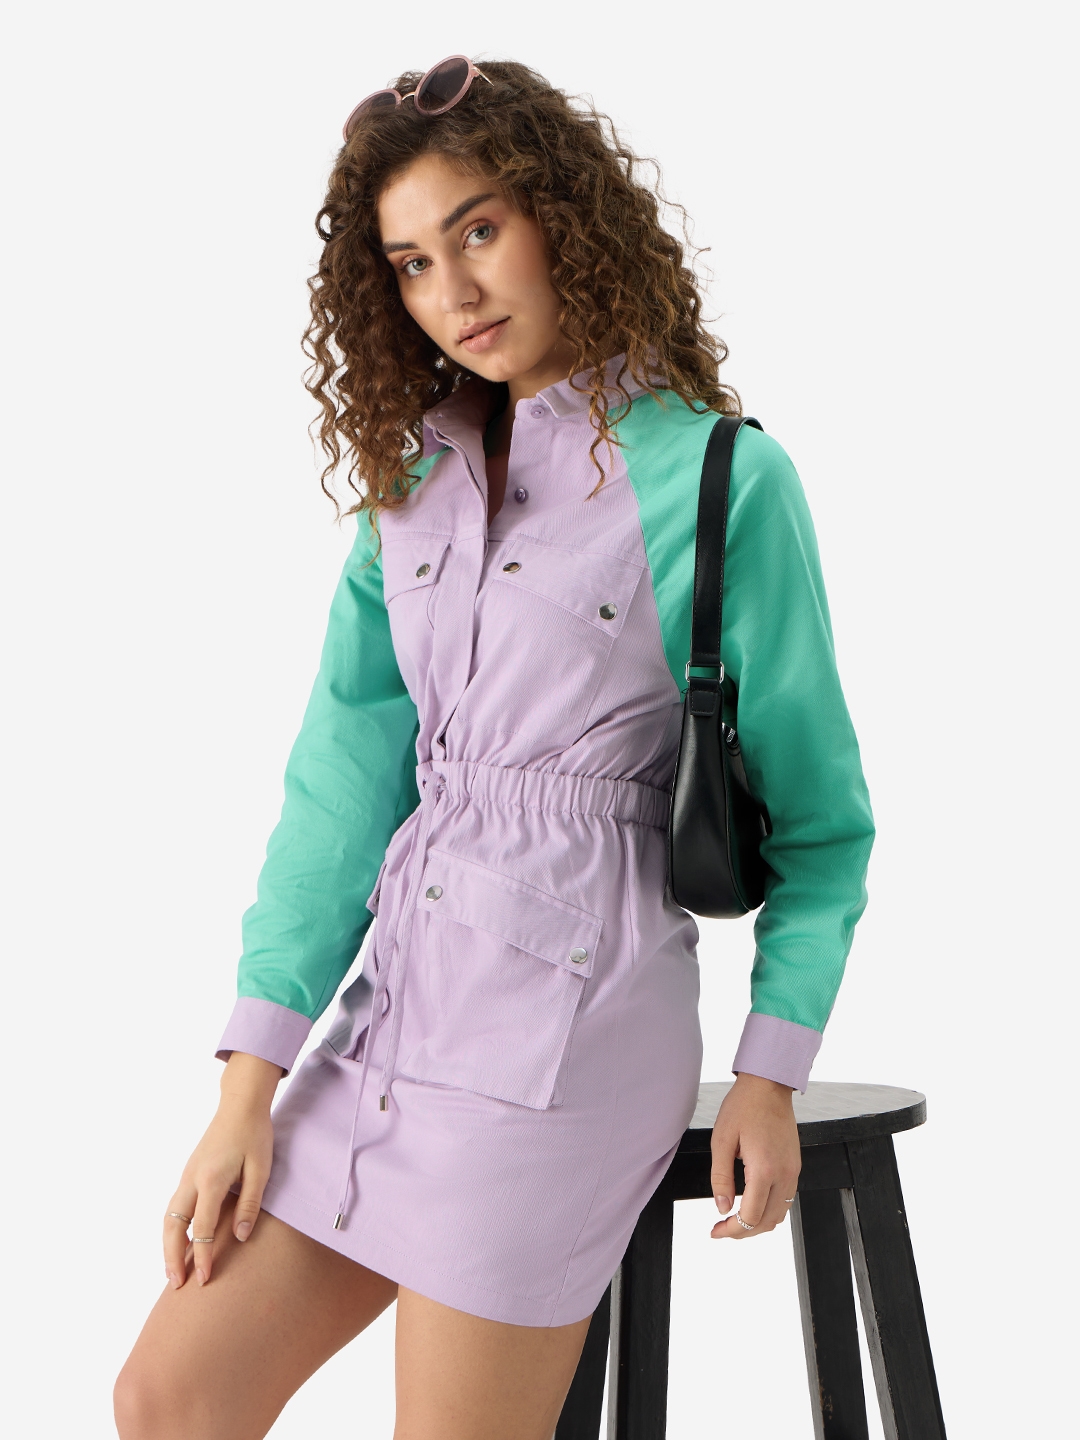 Women's Solids: Lavender Women's Shirt Dresses